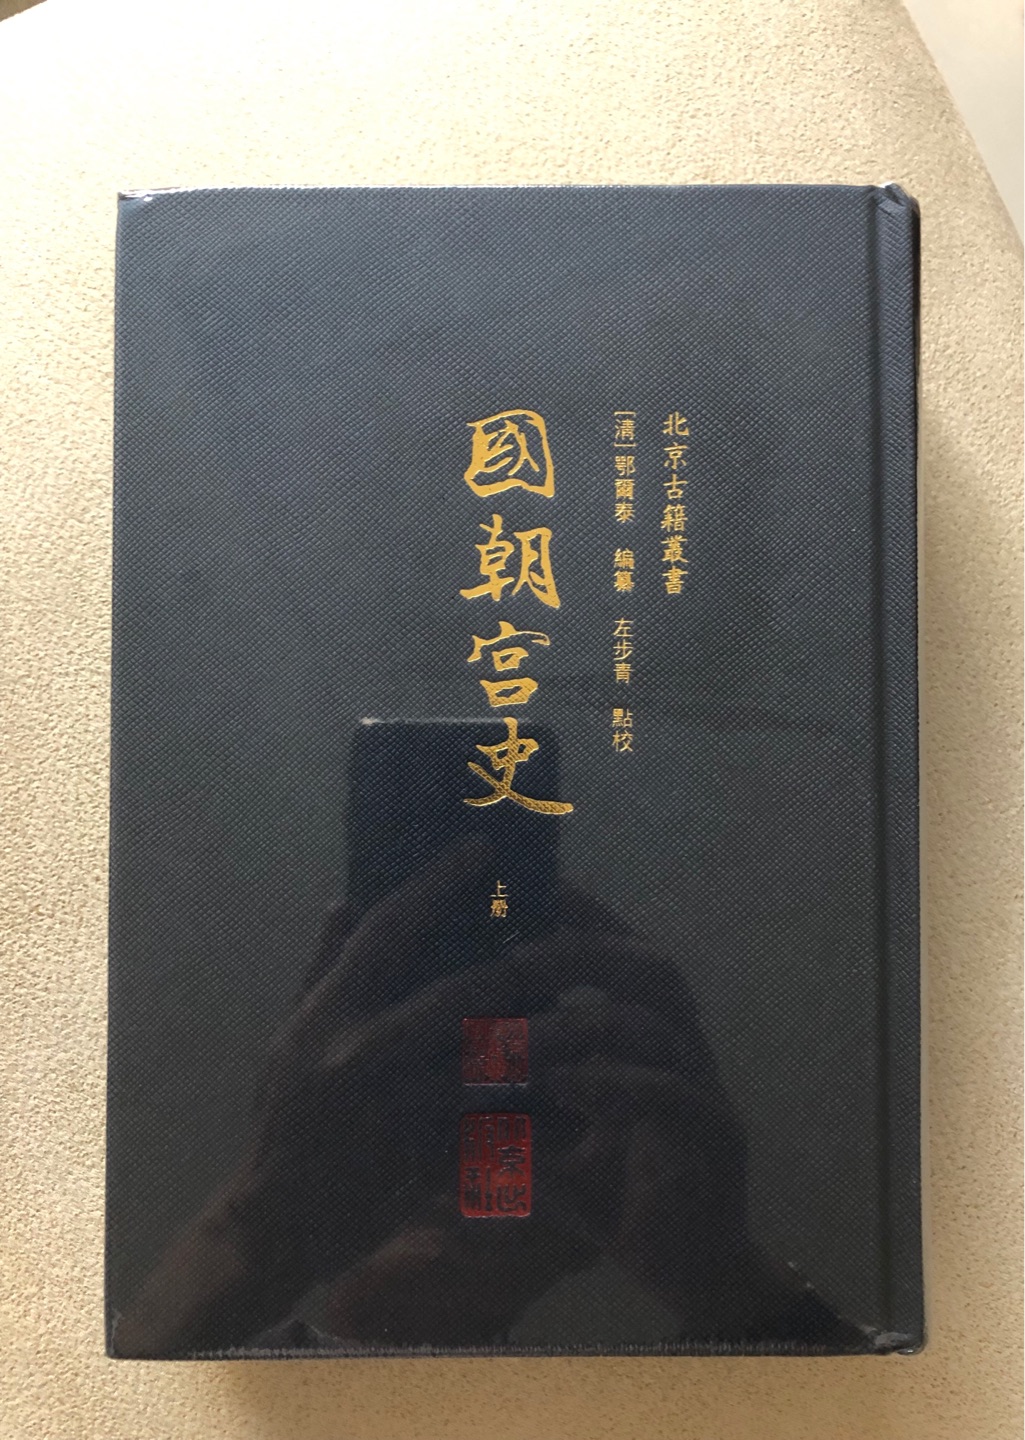 北京出版社的北京古籍丛书，精装竖排，质量不错，趁着活动入手了不少。